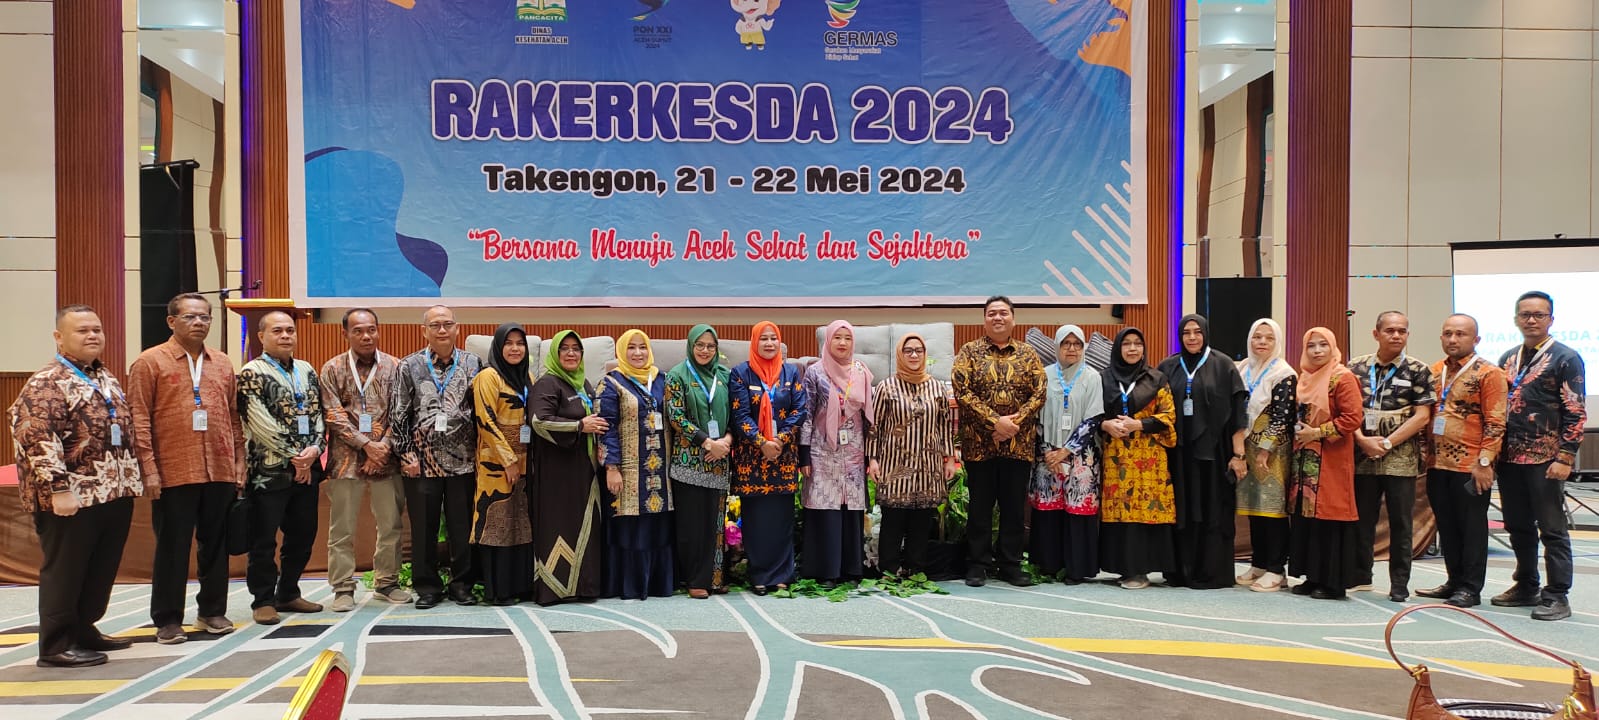 Hacer realidad la salud pública de Aceh requiere un fuerte compromiso